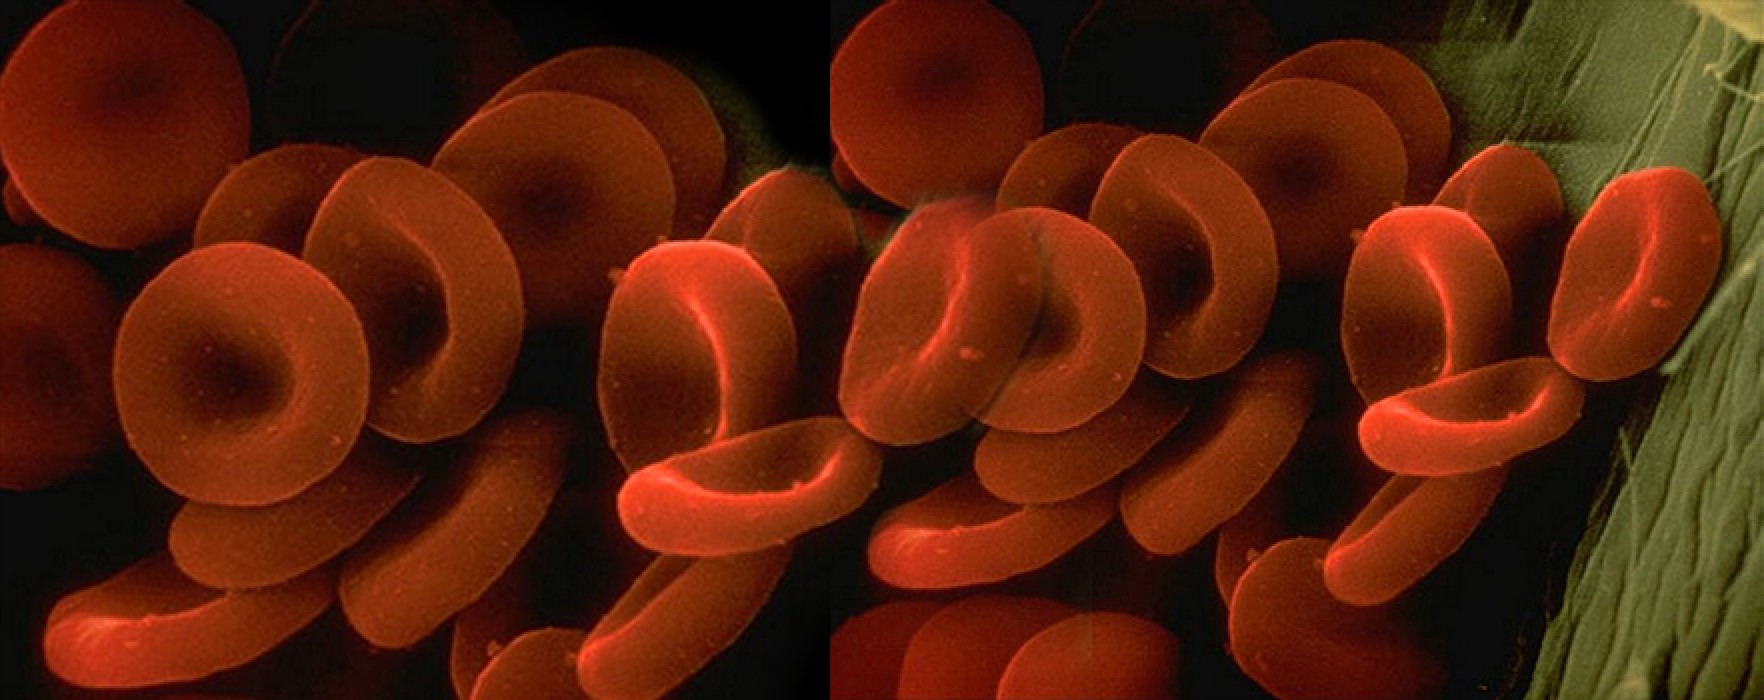 Kana Kırmızı Rengini Veren Hücreler: Alyuvarlar